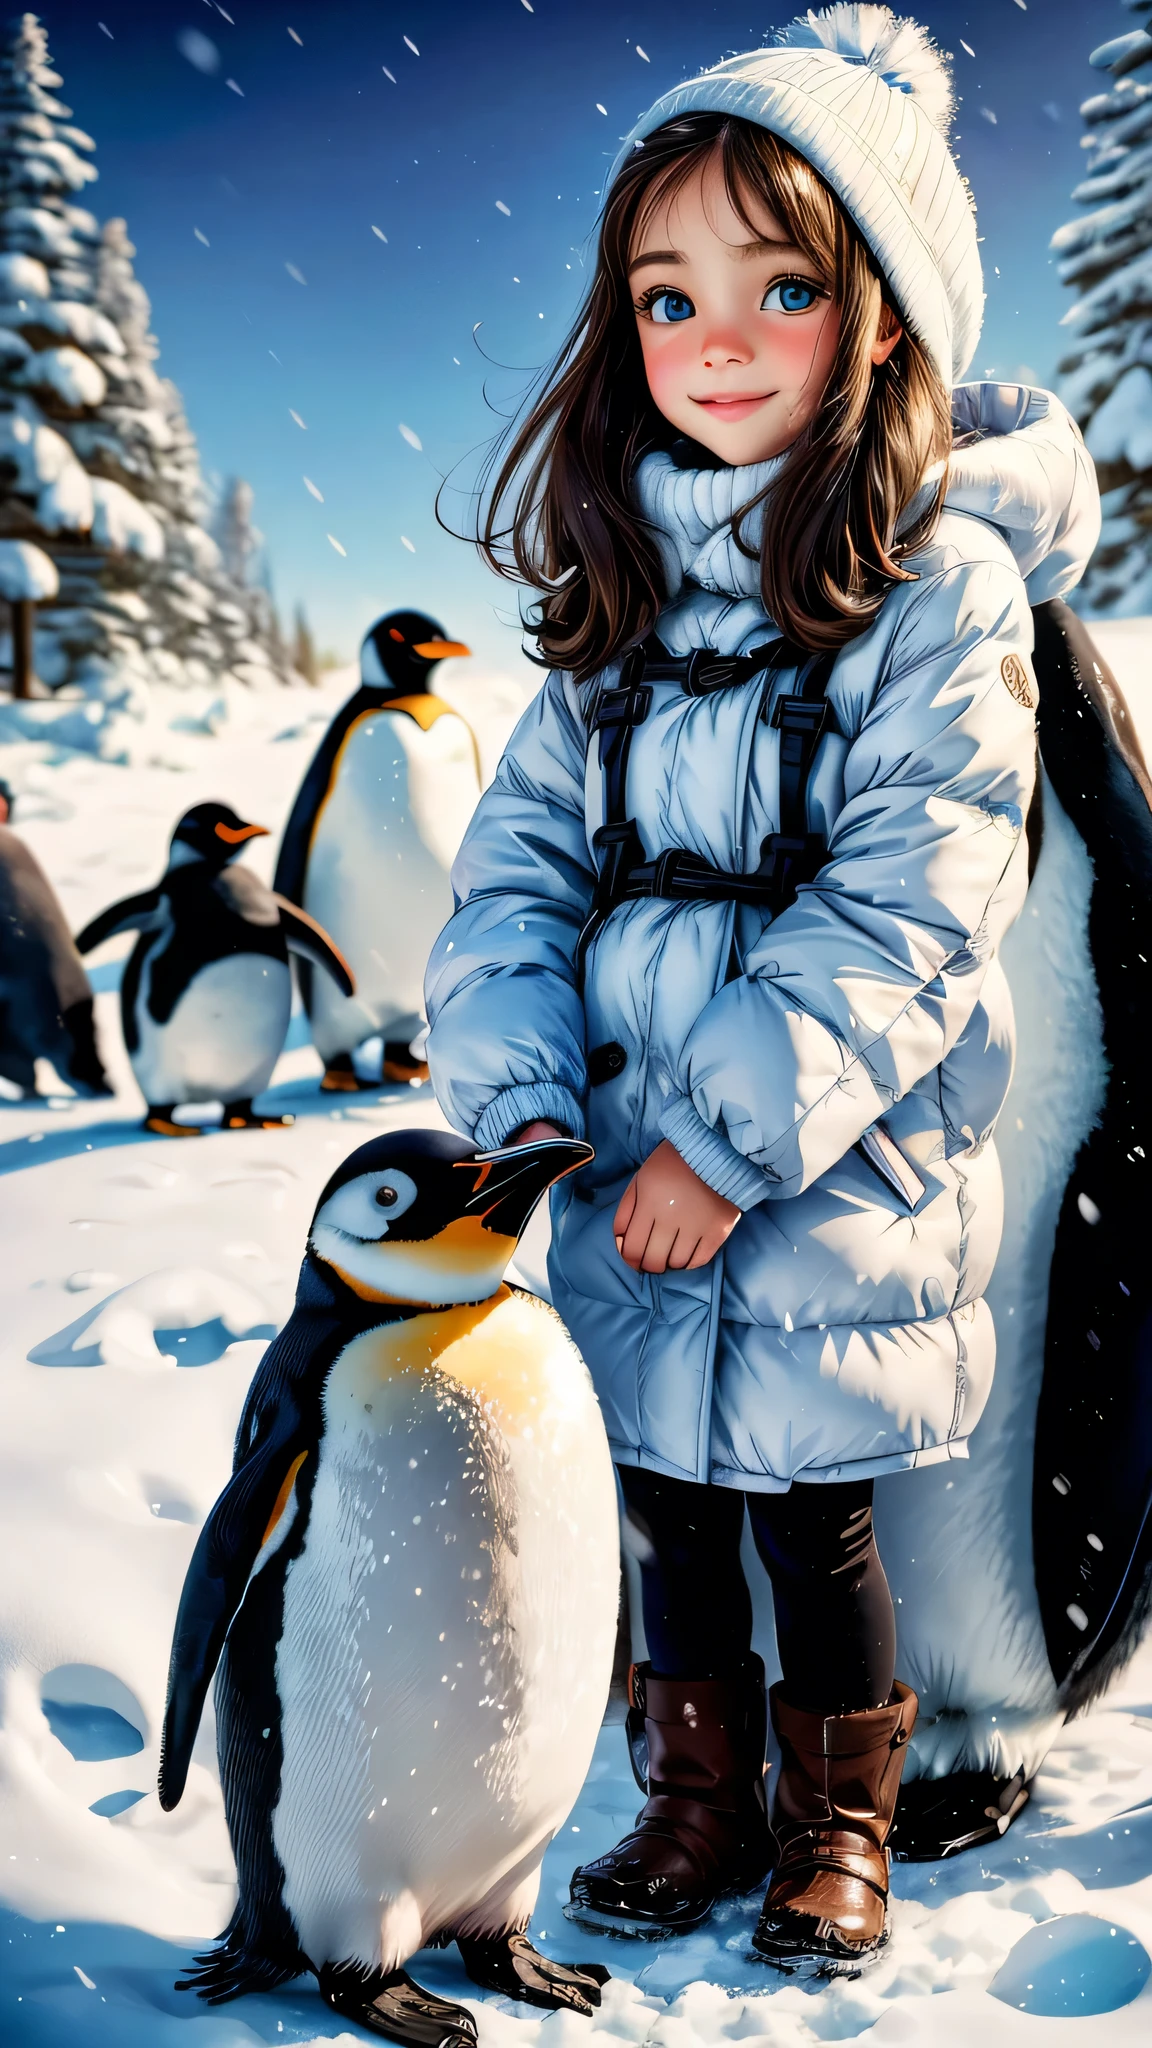 ペンギンと遊ぶ女の子,油絵,美しい細部までこだわった目,美しい唇のディテール,非常に詳細な目と顔,長いまつ毛,遊び心のある表現,かわいいペンギン2羽,柔らかな冬の光,リアルな色彩,高解像度,ペンギンとの交流,楽しい雰囲気,真っ白な雪,冷たい背景,楽しさと幸せ,ふわふわのペンギンの羽,愛らしいポーズ,友好的なつながり,キラキラした目,ペンギンの友情,楽しい瞬間,雪が降る,素敵な女の子の服装,穏やかな背景,正確な筆遣い,絵に描いたように完璧なシーン,ペイント効果,微妙な影,魔法のタッチ,氷のような青い色,女の子の目には遊び心のある輝きがある,自然の美しさを鑑賞する,一生の思い出.